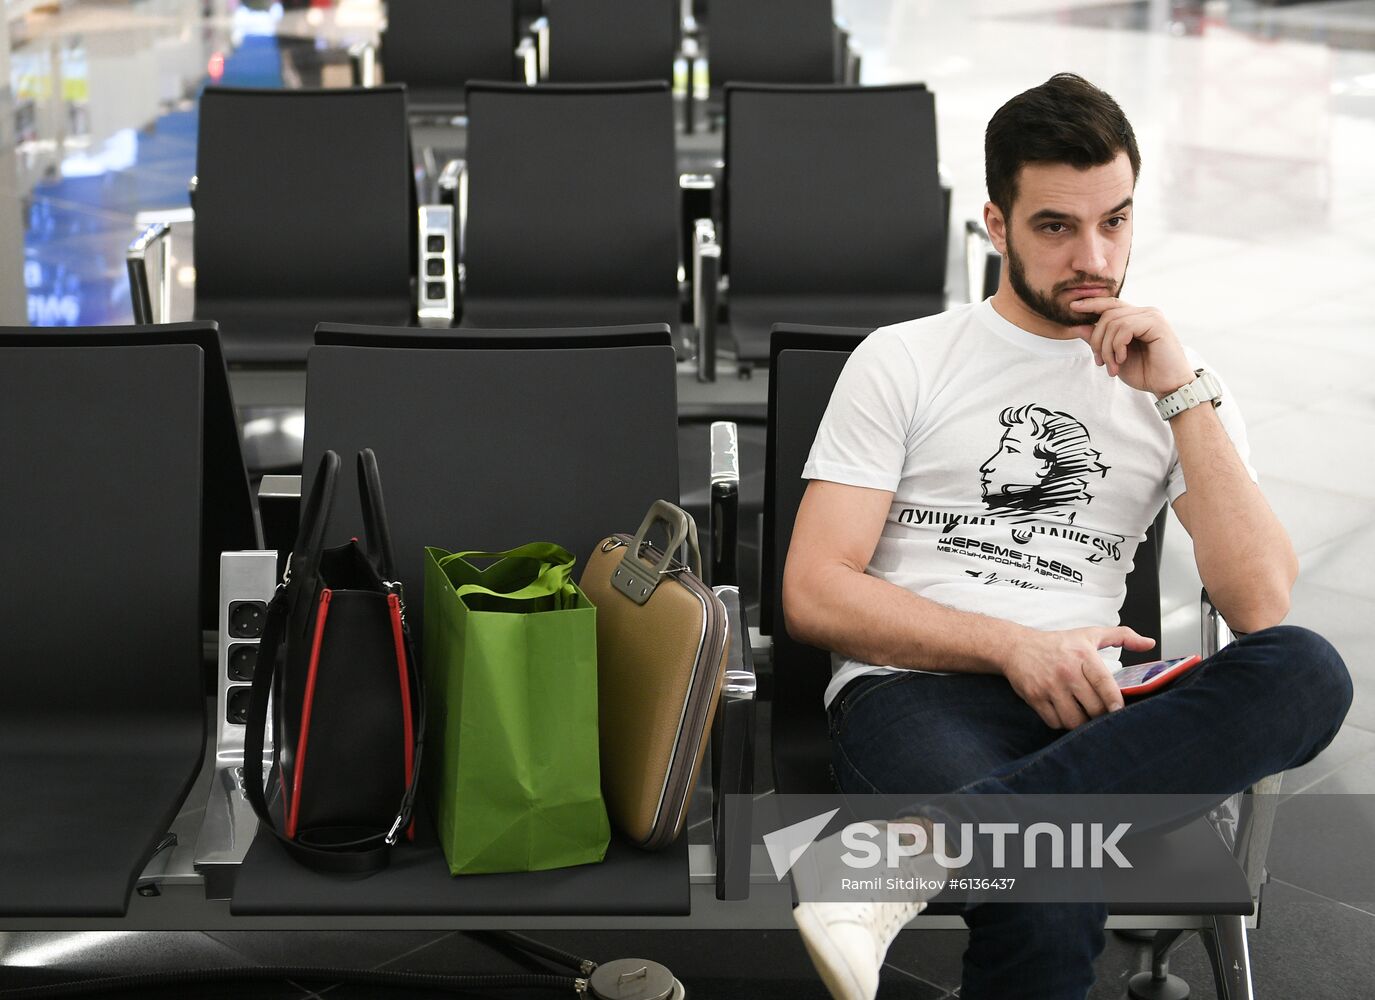 Russia Sheremetyevo Airport